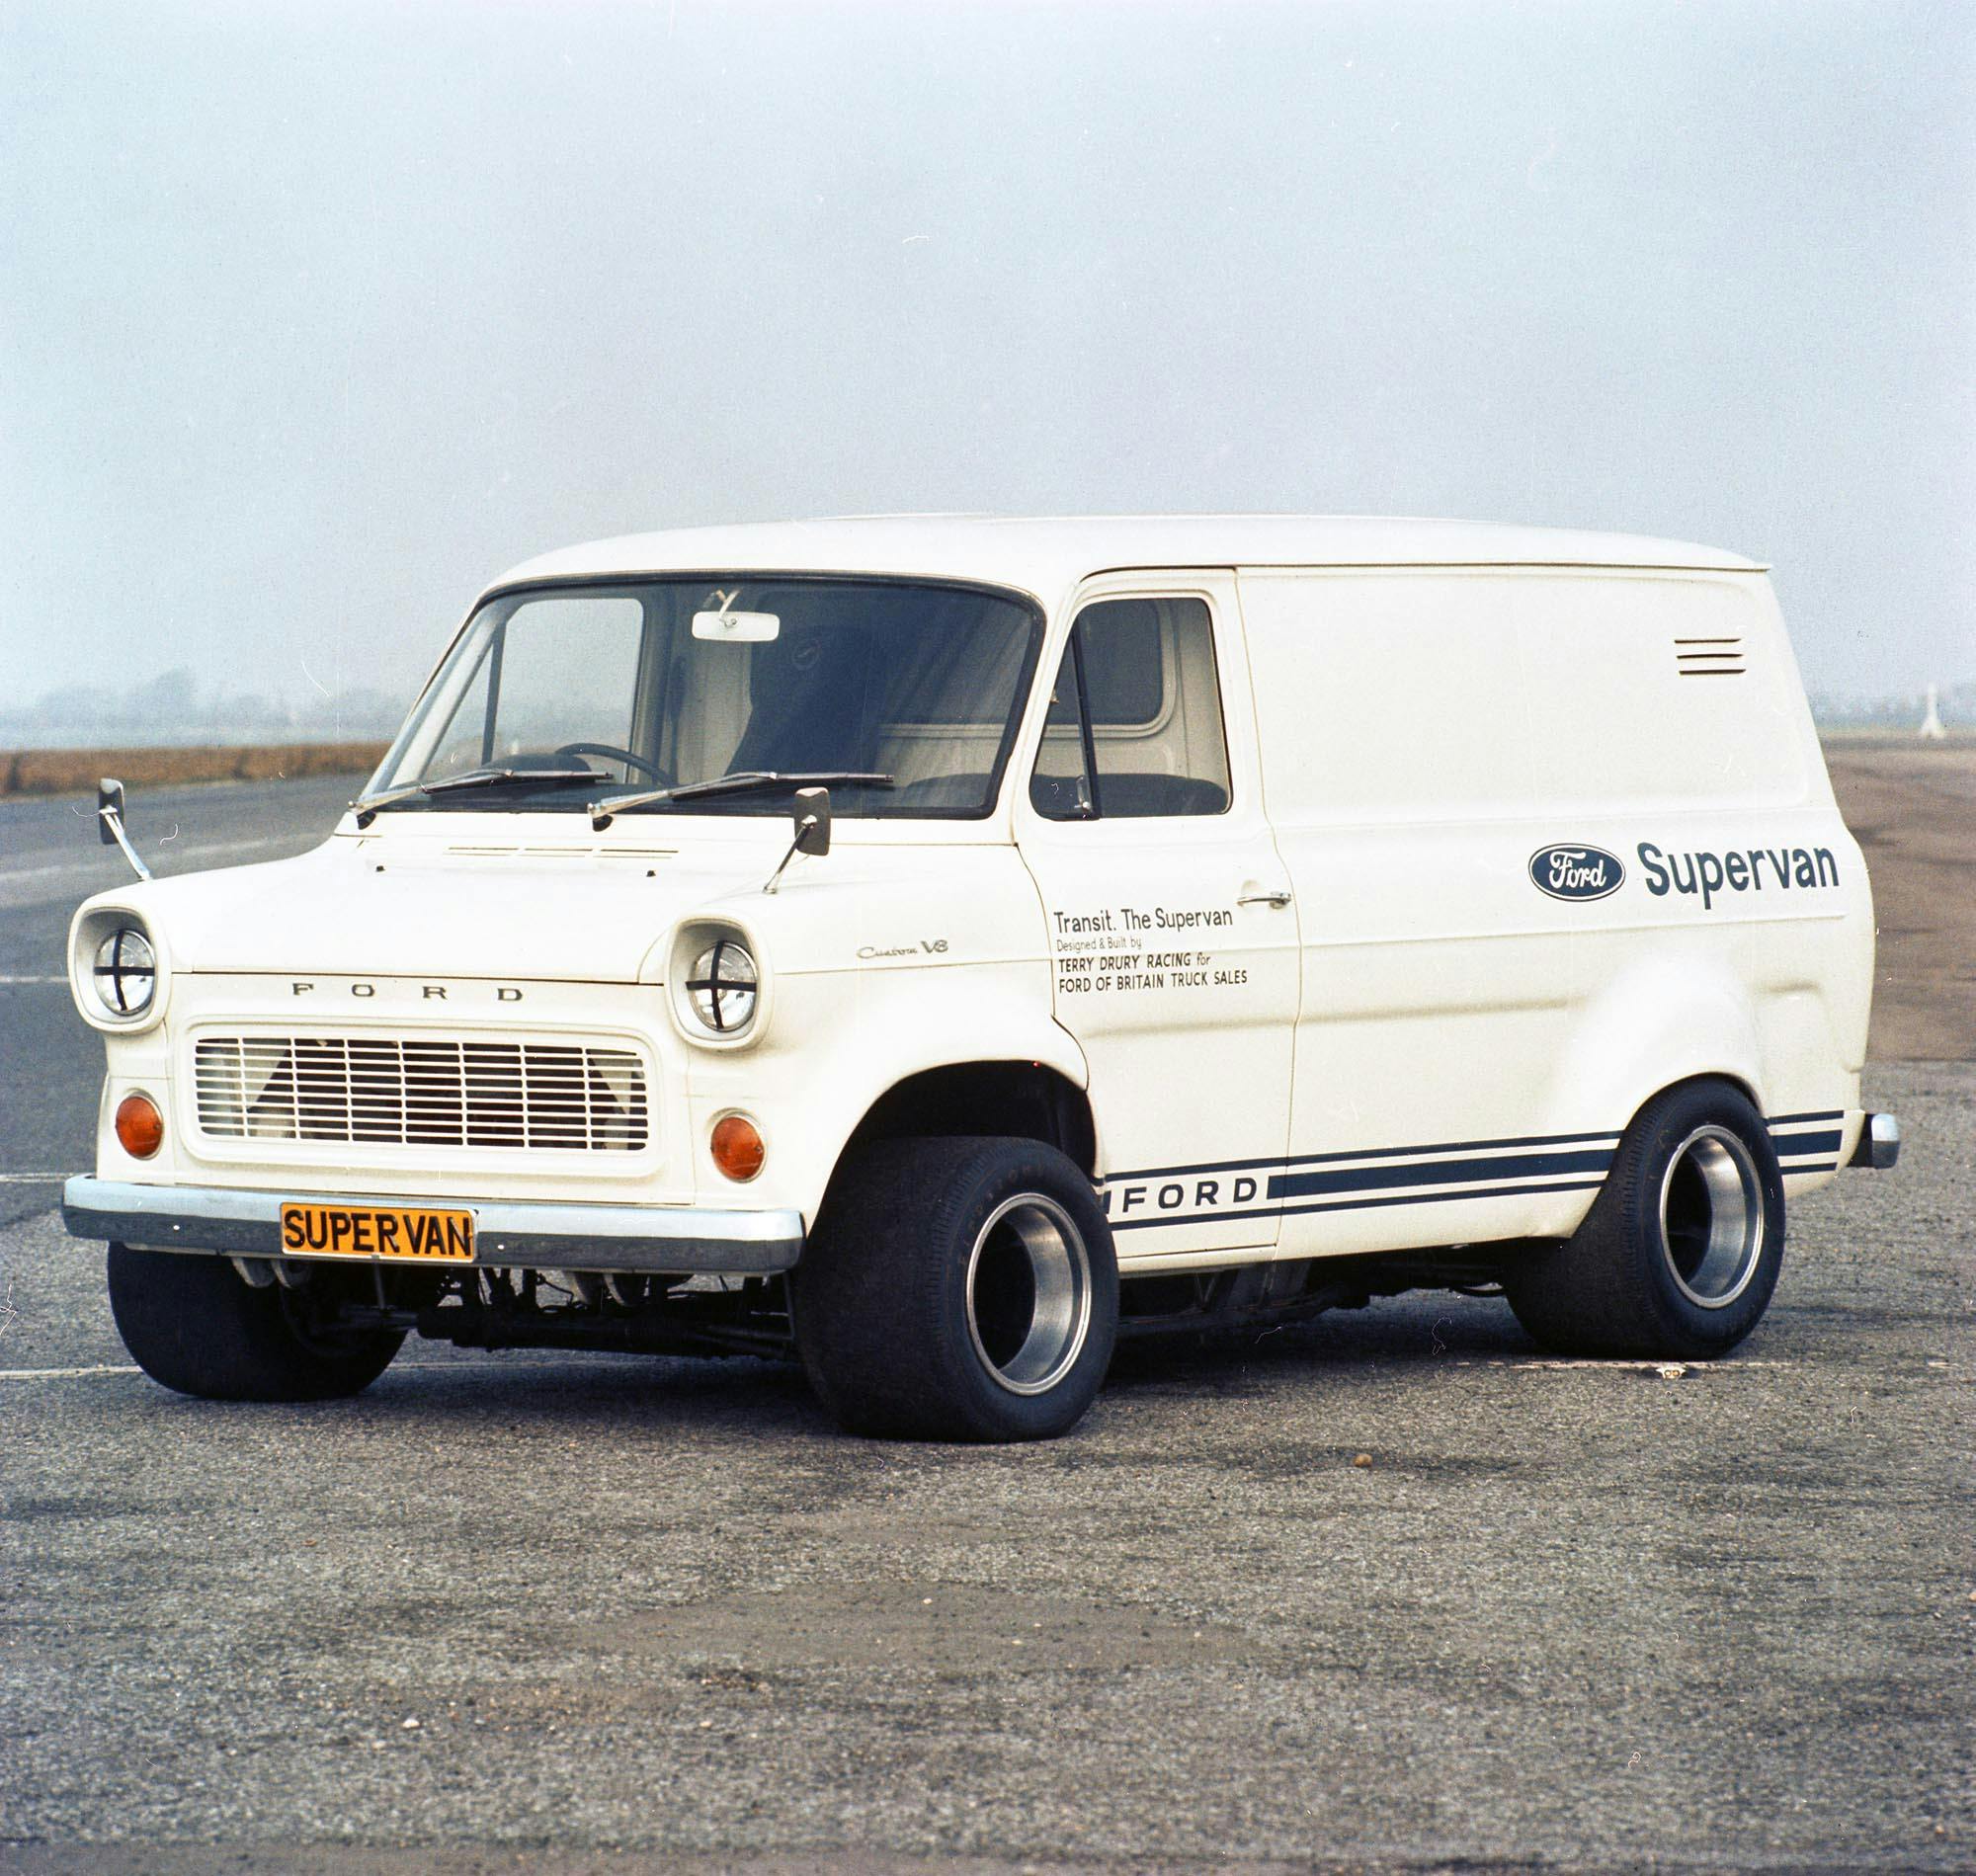 1971 Ford Transit Mark I Racing V8 Supervan in parking lot CN UK 1971-175-0001